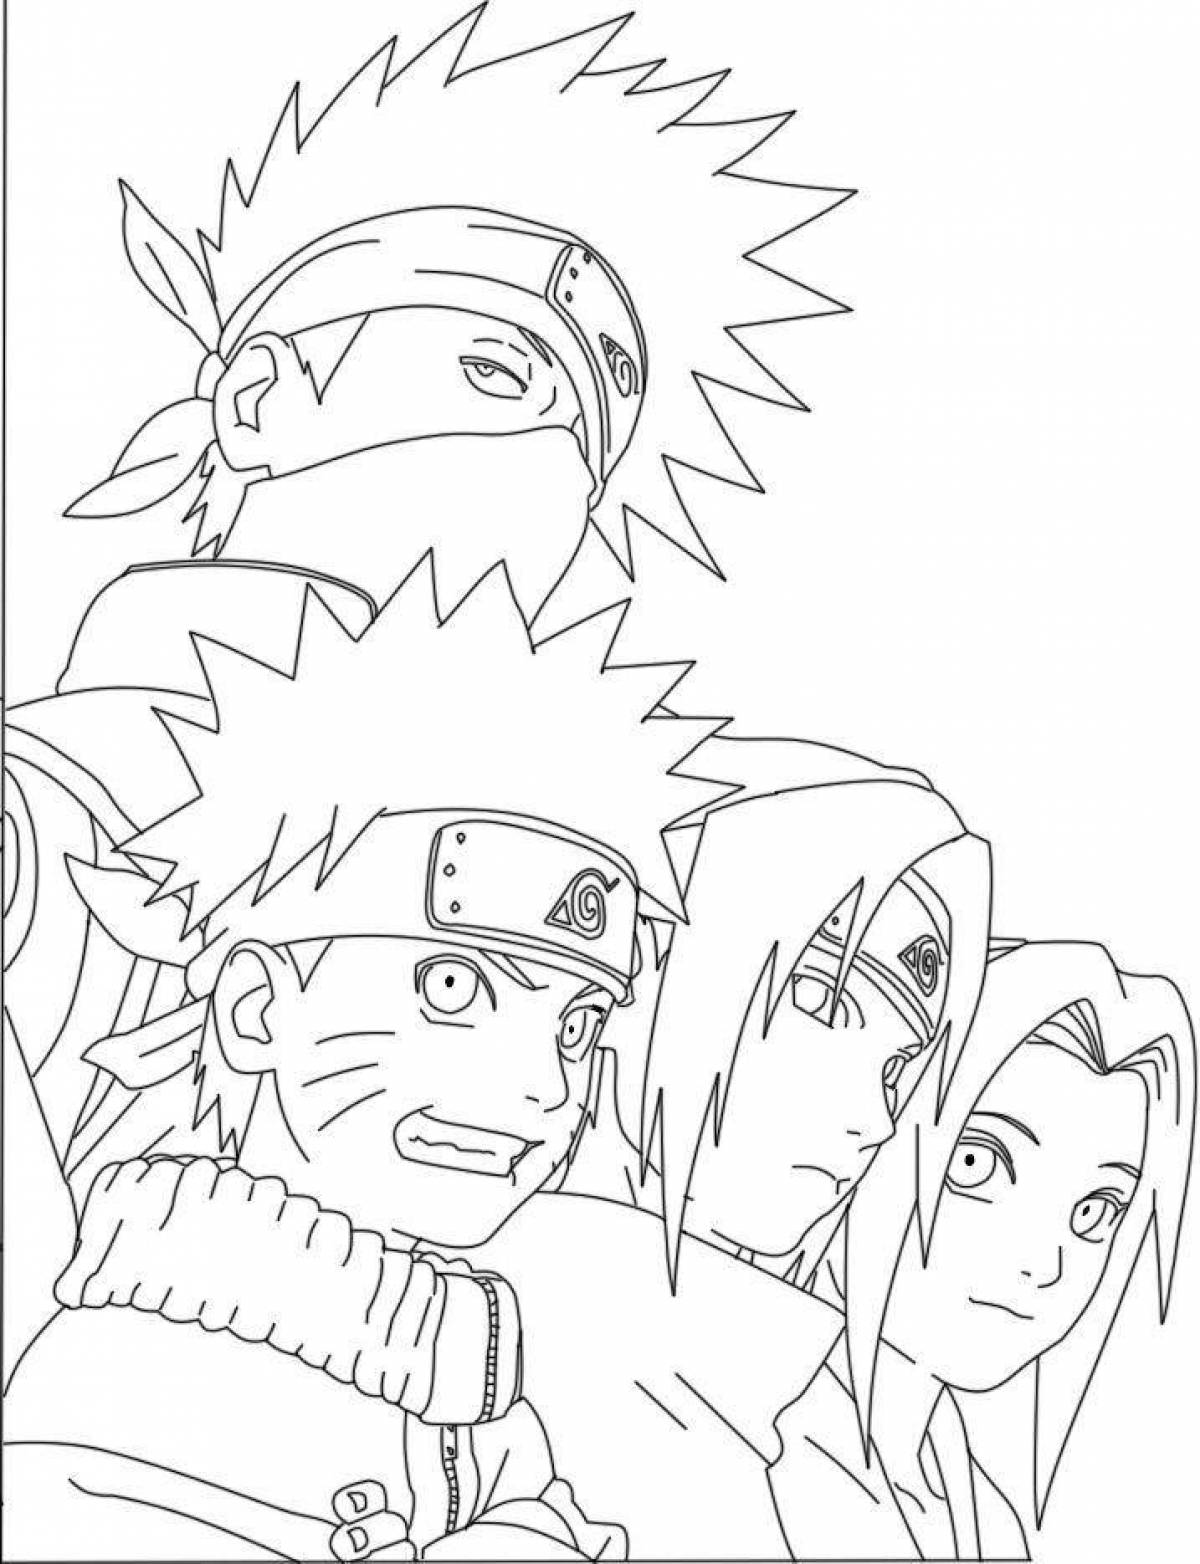 Naruto team 7 majestic coloring